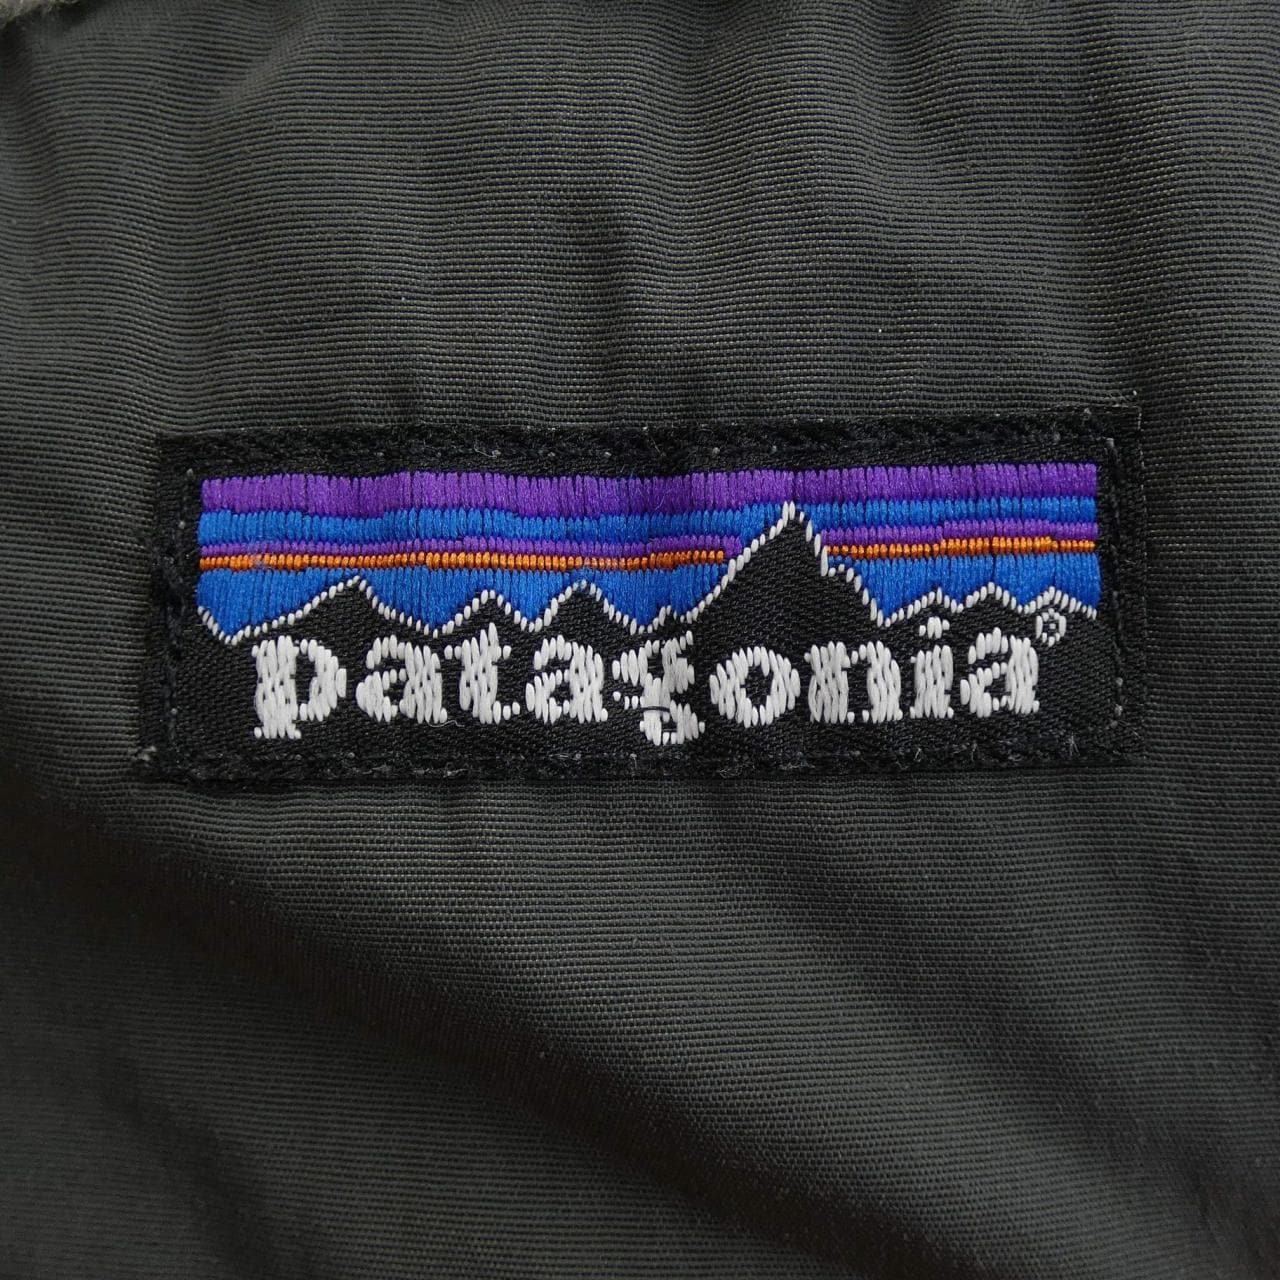 パタゴニア PATAGONIA ブルゾン